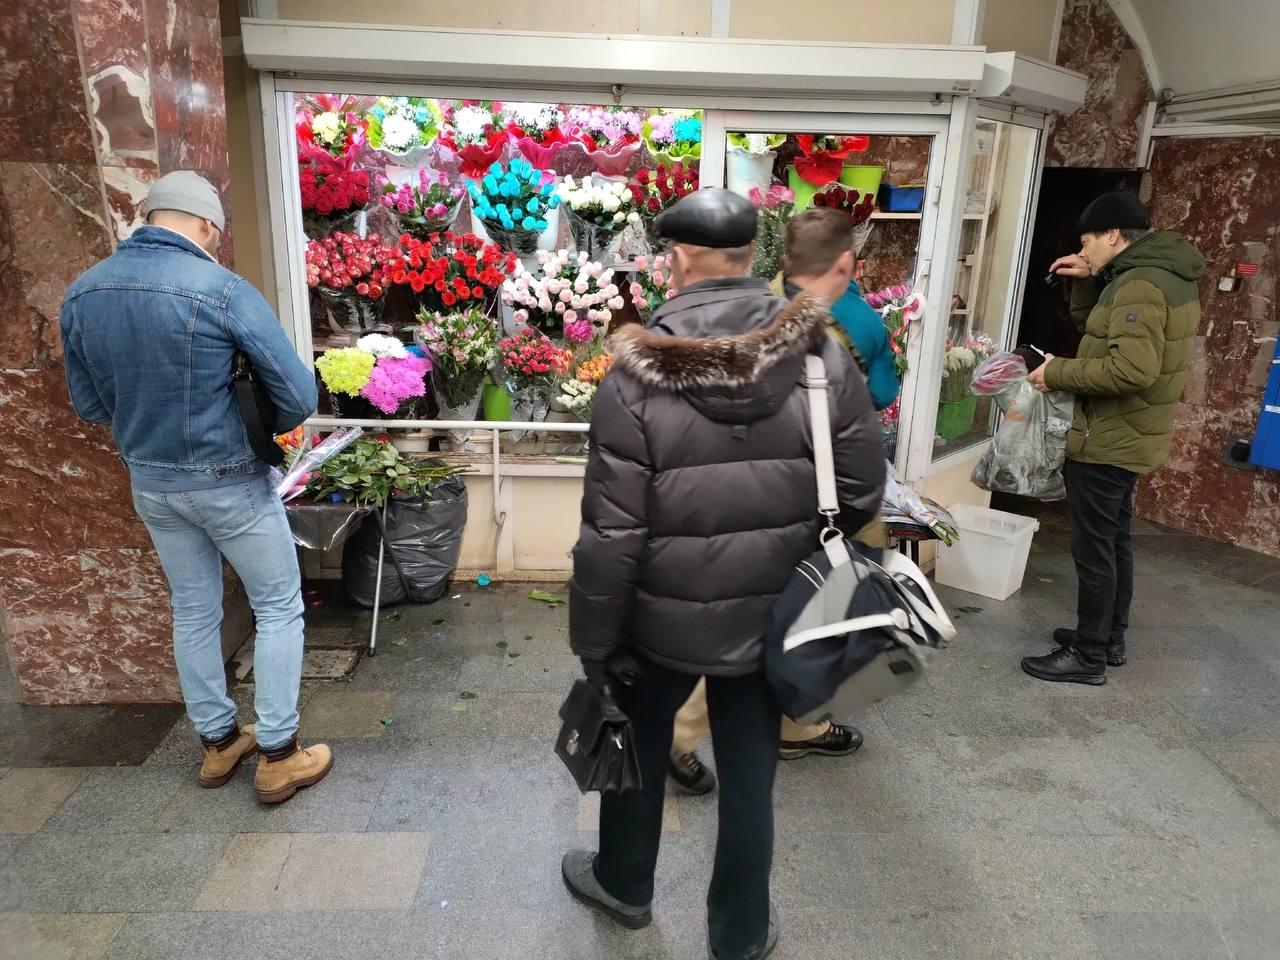 Фото В Новосибирске мужчины выстроились в очереди за цветами 8 марта 4